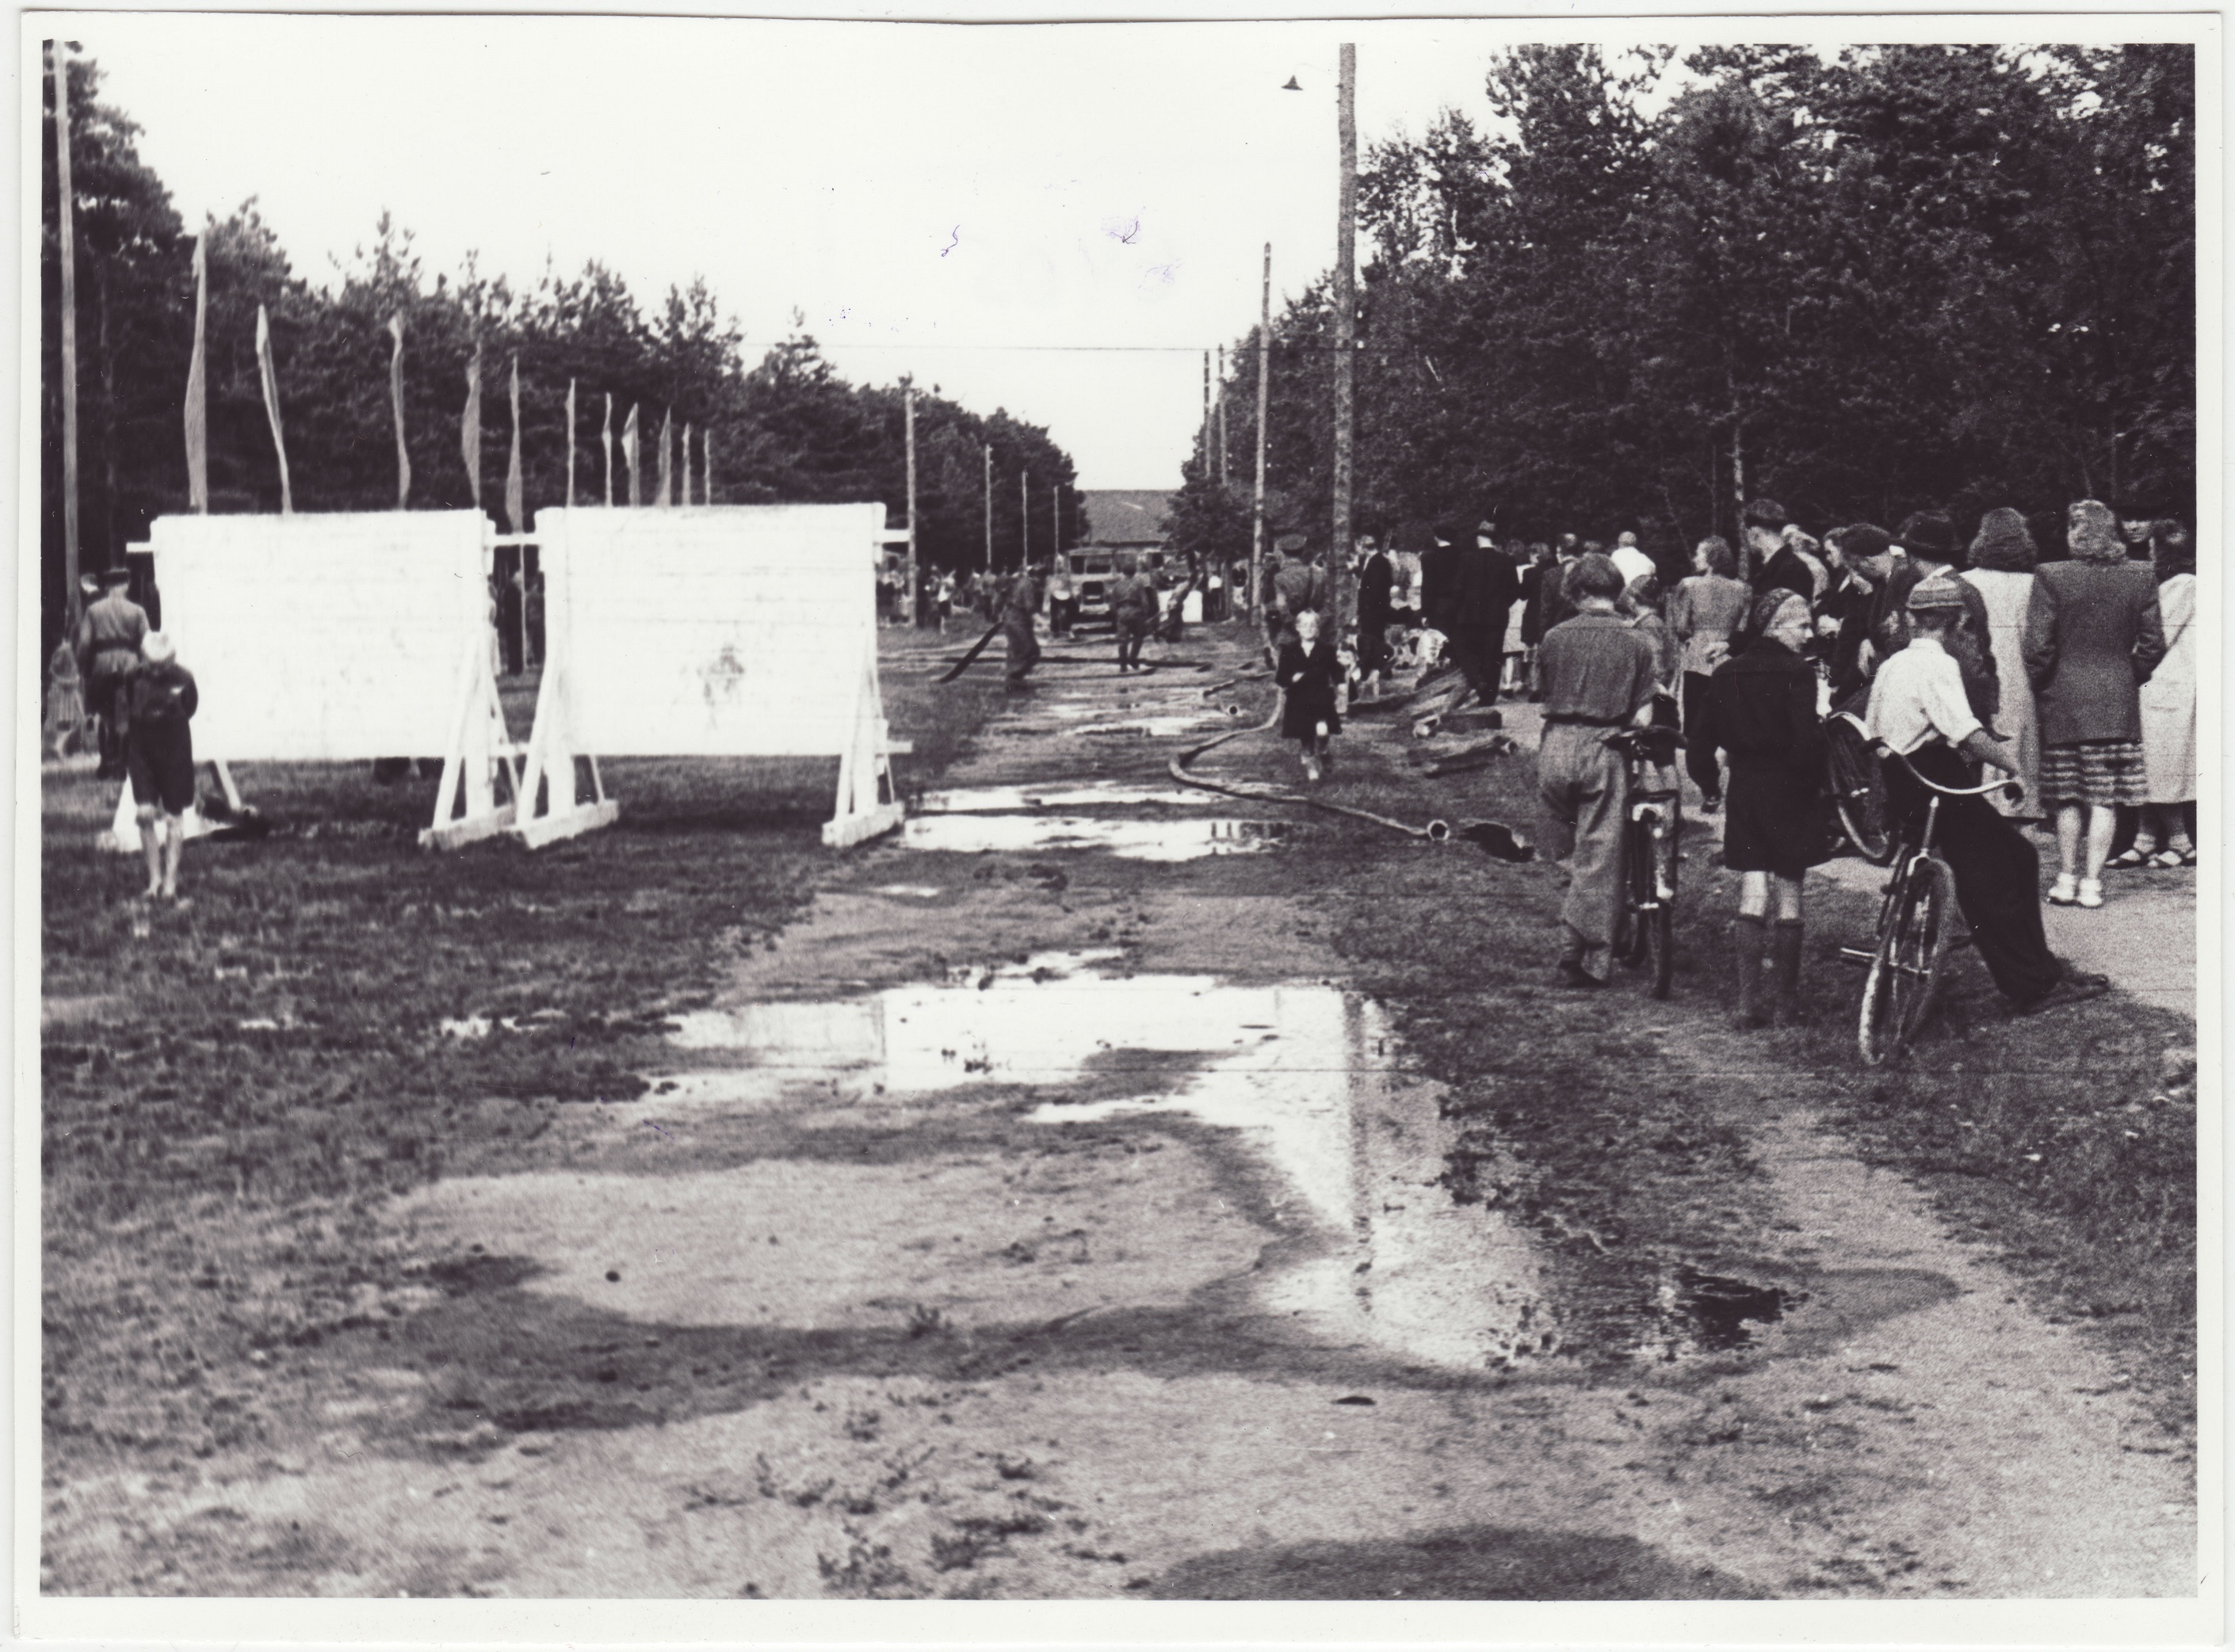 Komandodevahelised tuletõrjevõistlused Tallinnas: võistlusplatsi üldvaade, 1950.a.